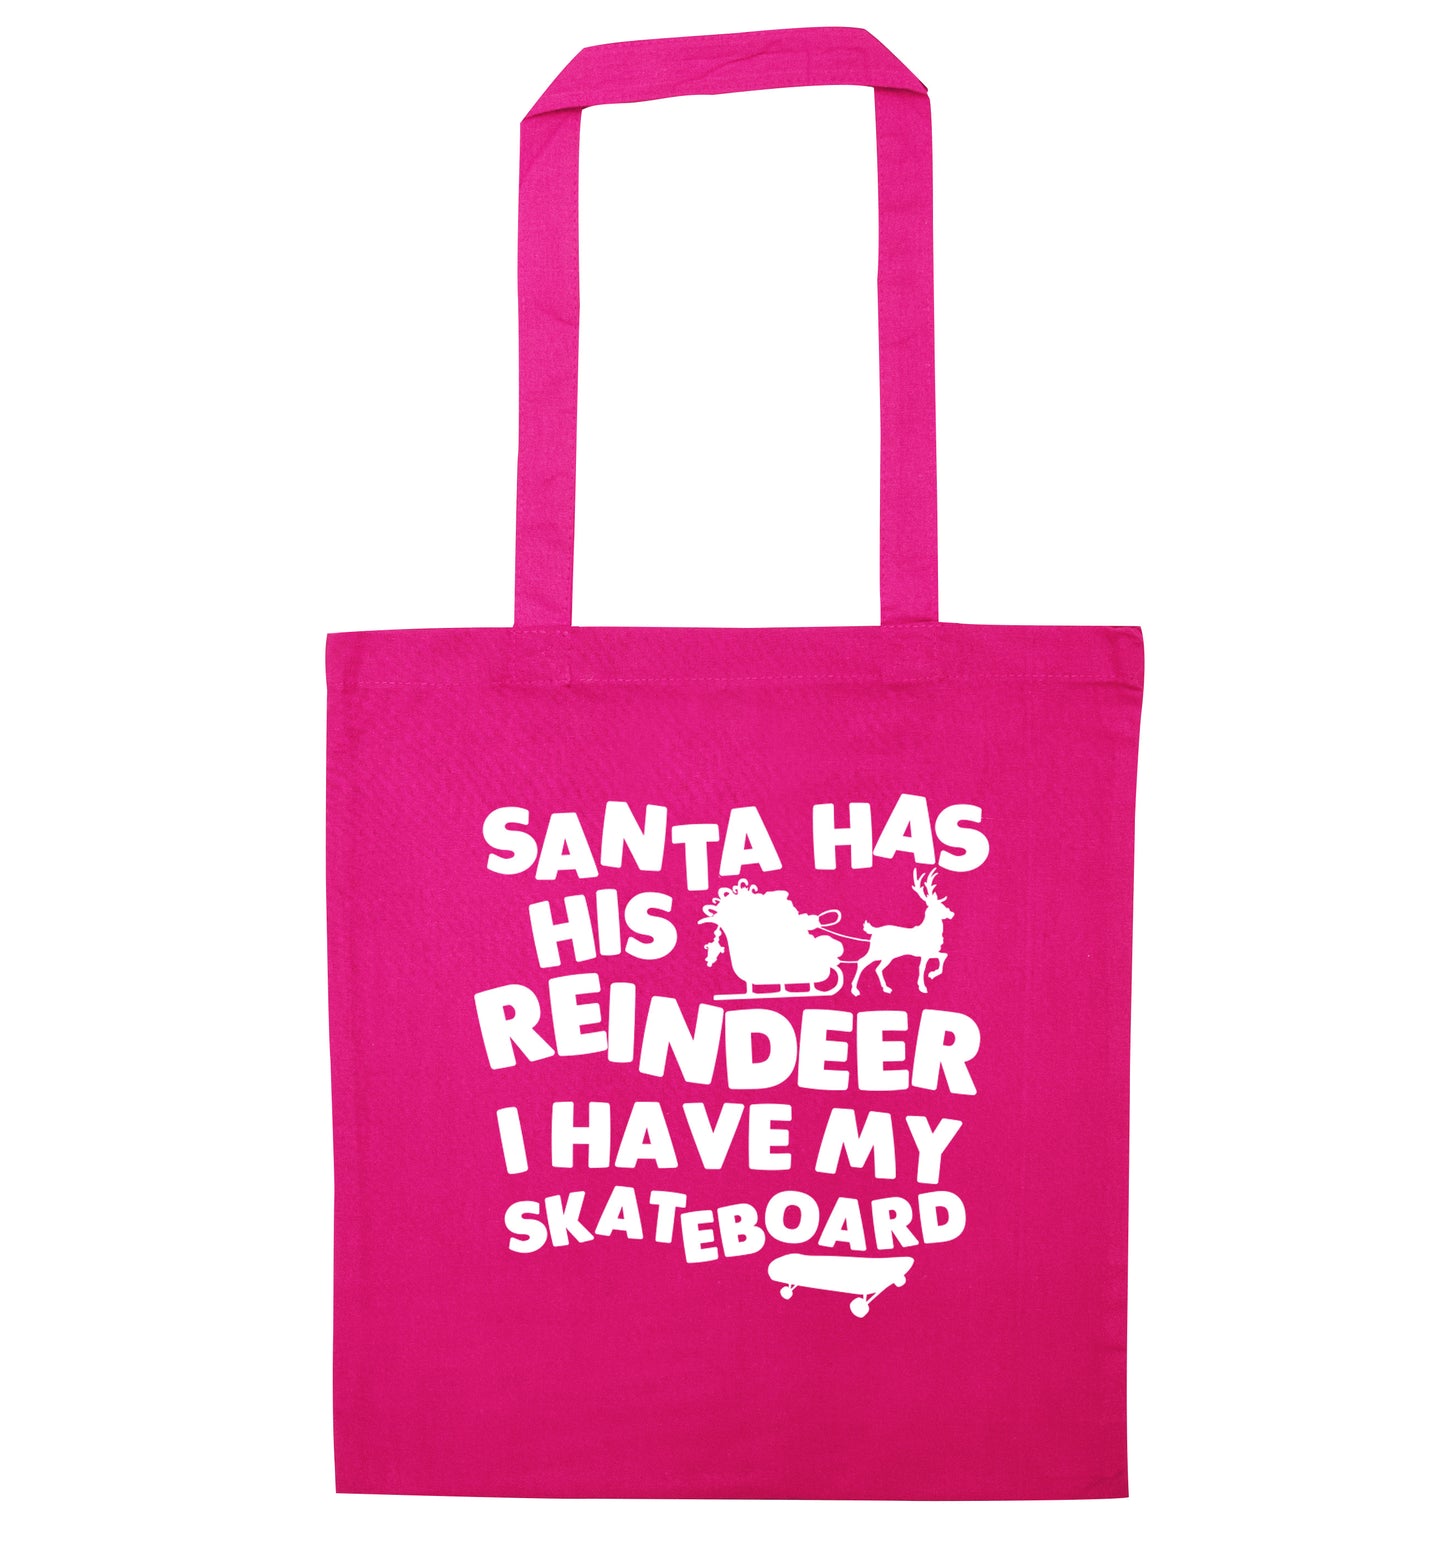 Santa has his reindeer I have my skateboard pink tote bag